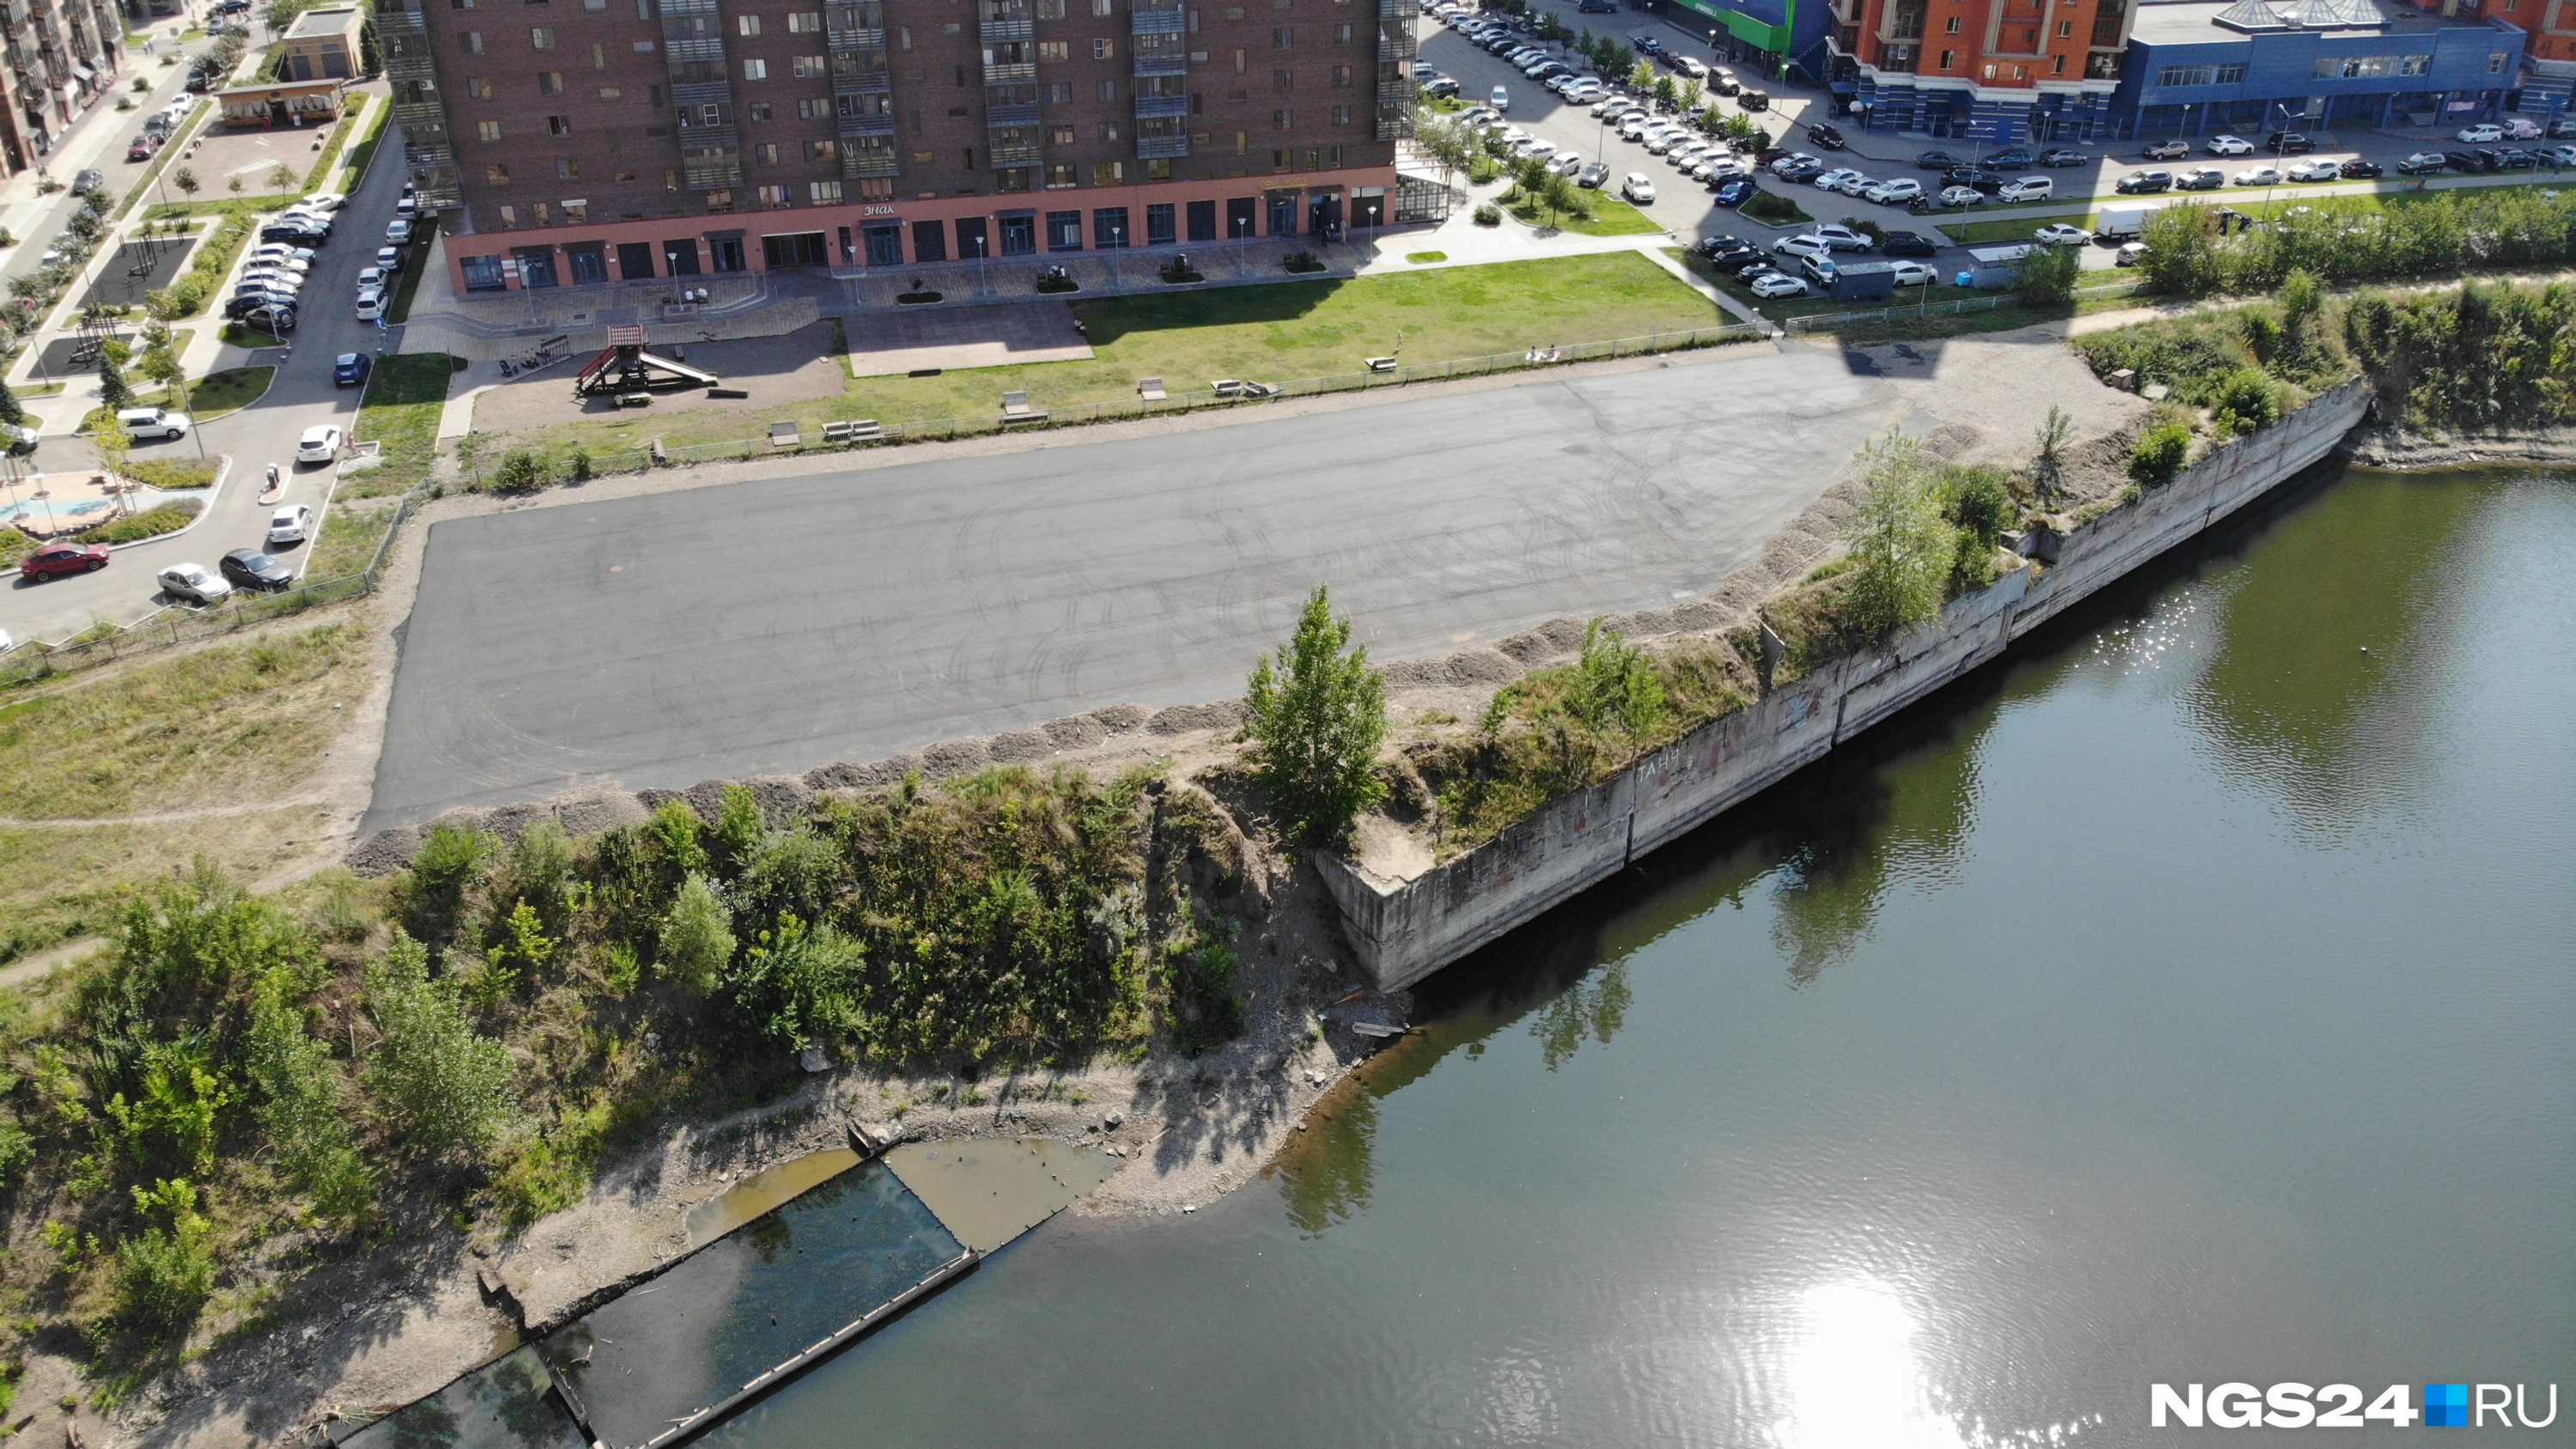 Со стороны реки видно бетонную стену и металлическую конструкцию в воде